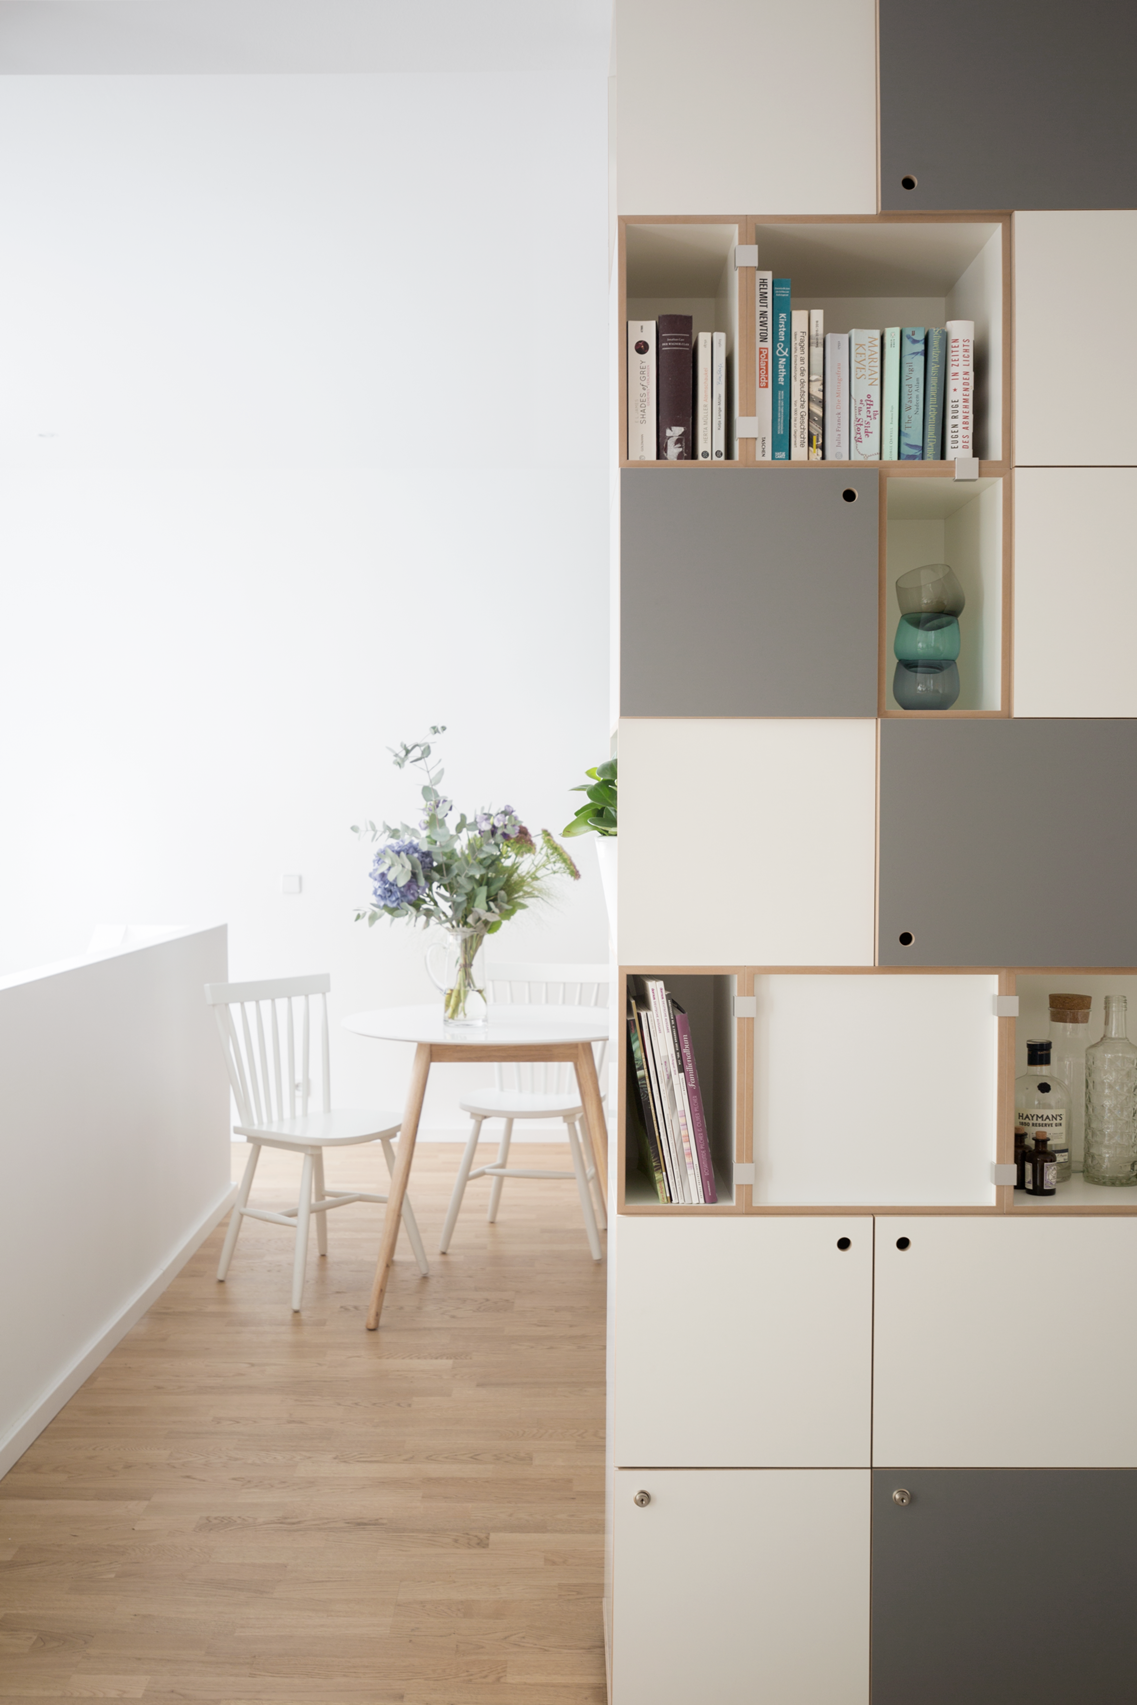 Wohnzimmerregal für Bücher und Dekoration #regal #wohnzimmer #regalsystem #schrank ©Stocubo GmbH